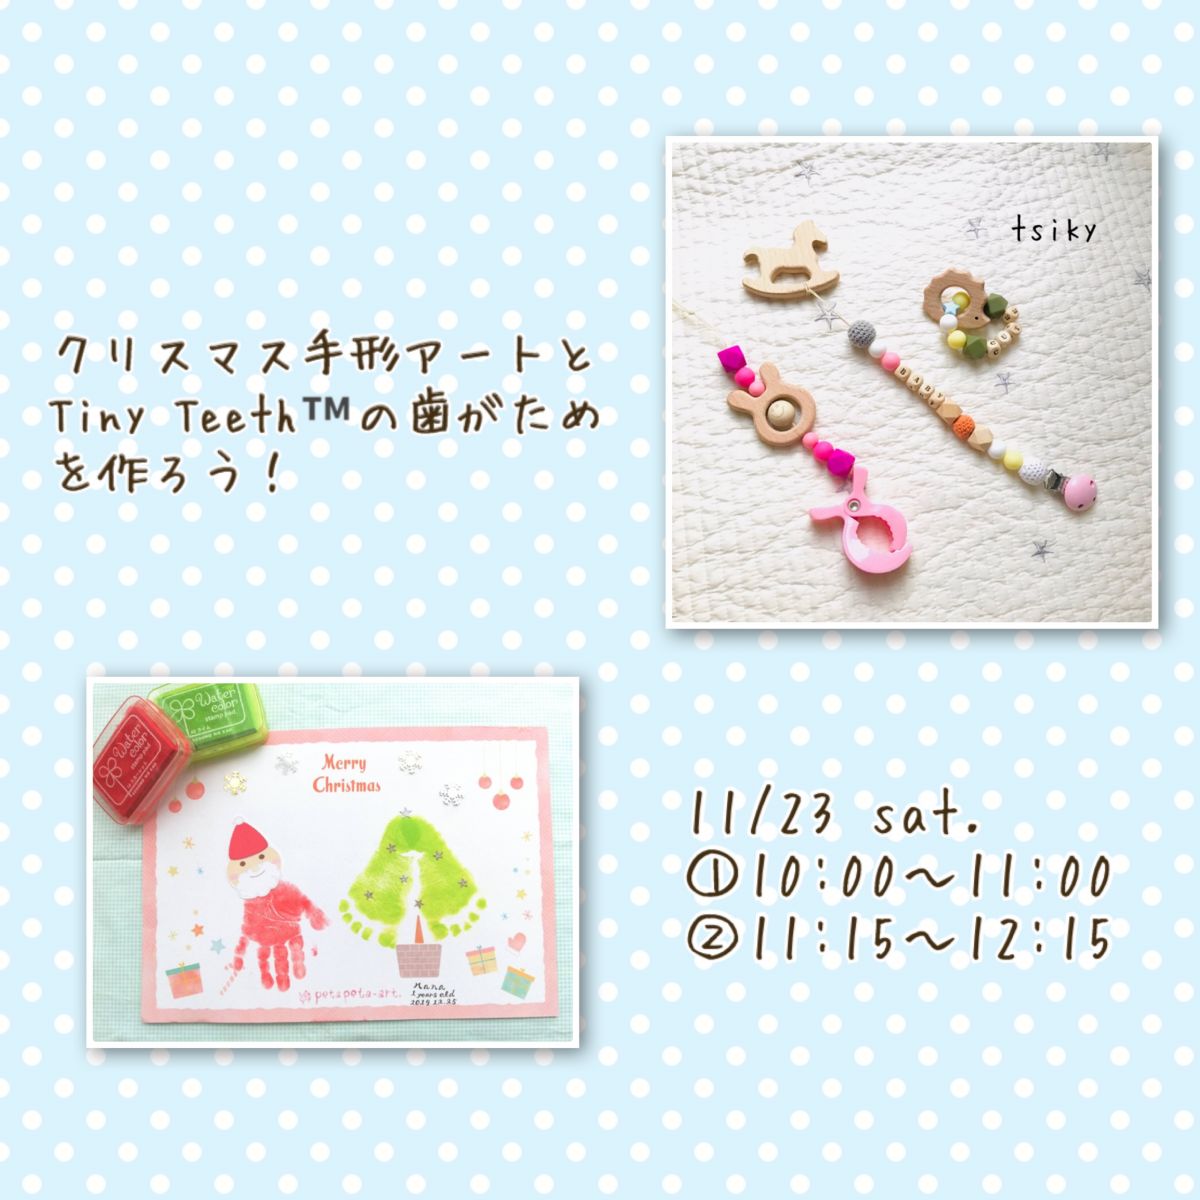 クリスマス手形アートとtiny Teeth の歯固め作り Tsiky Tsunagu